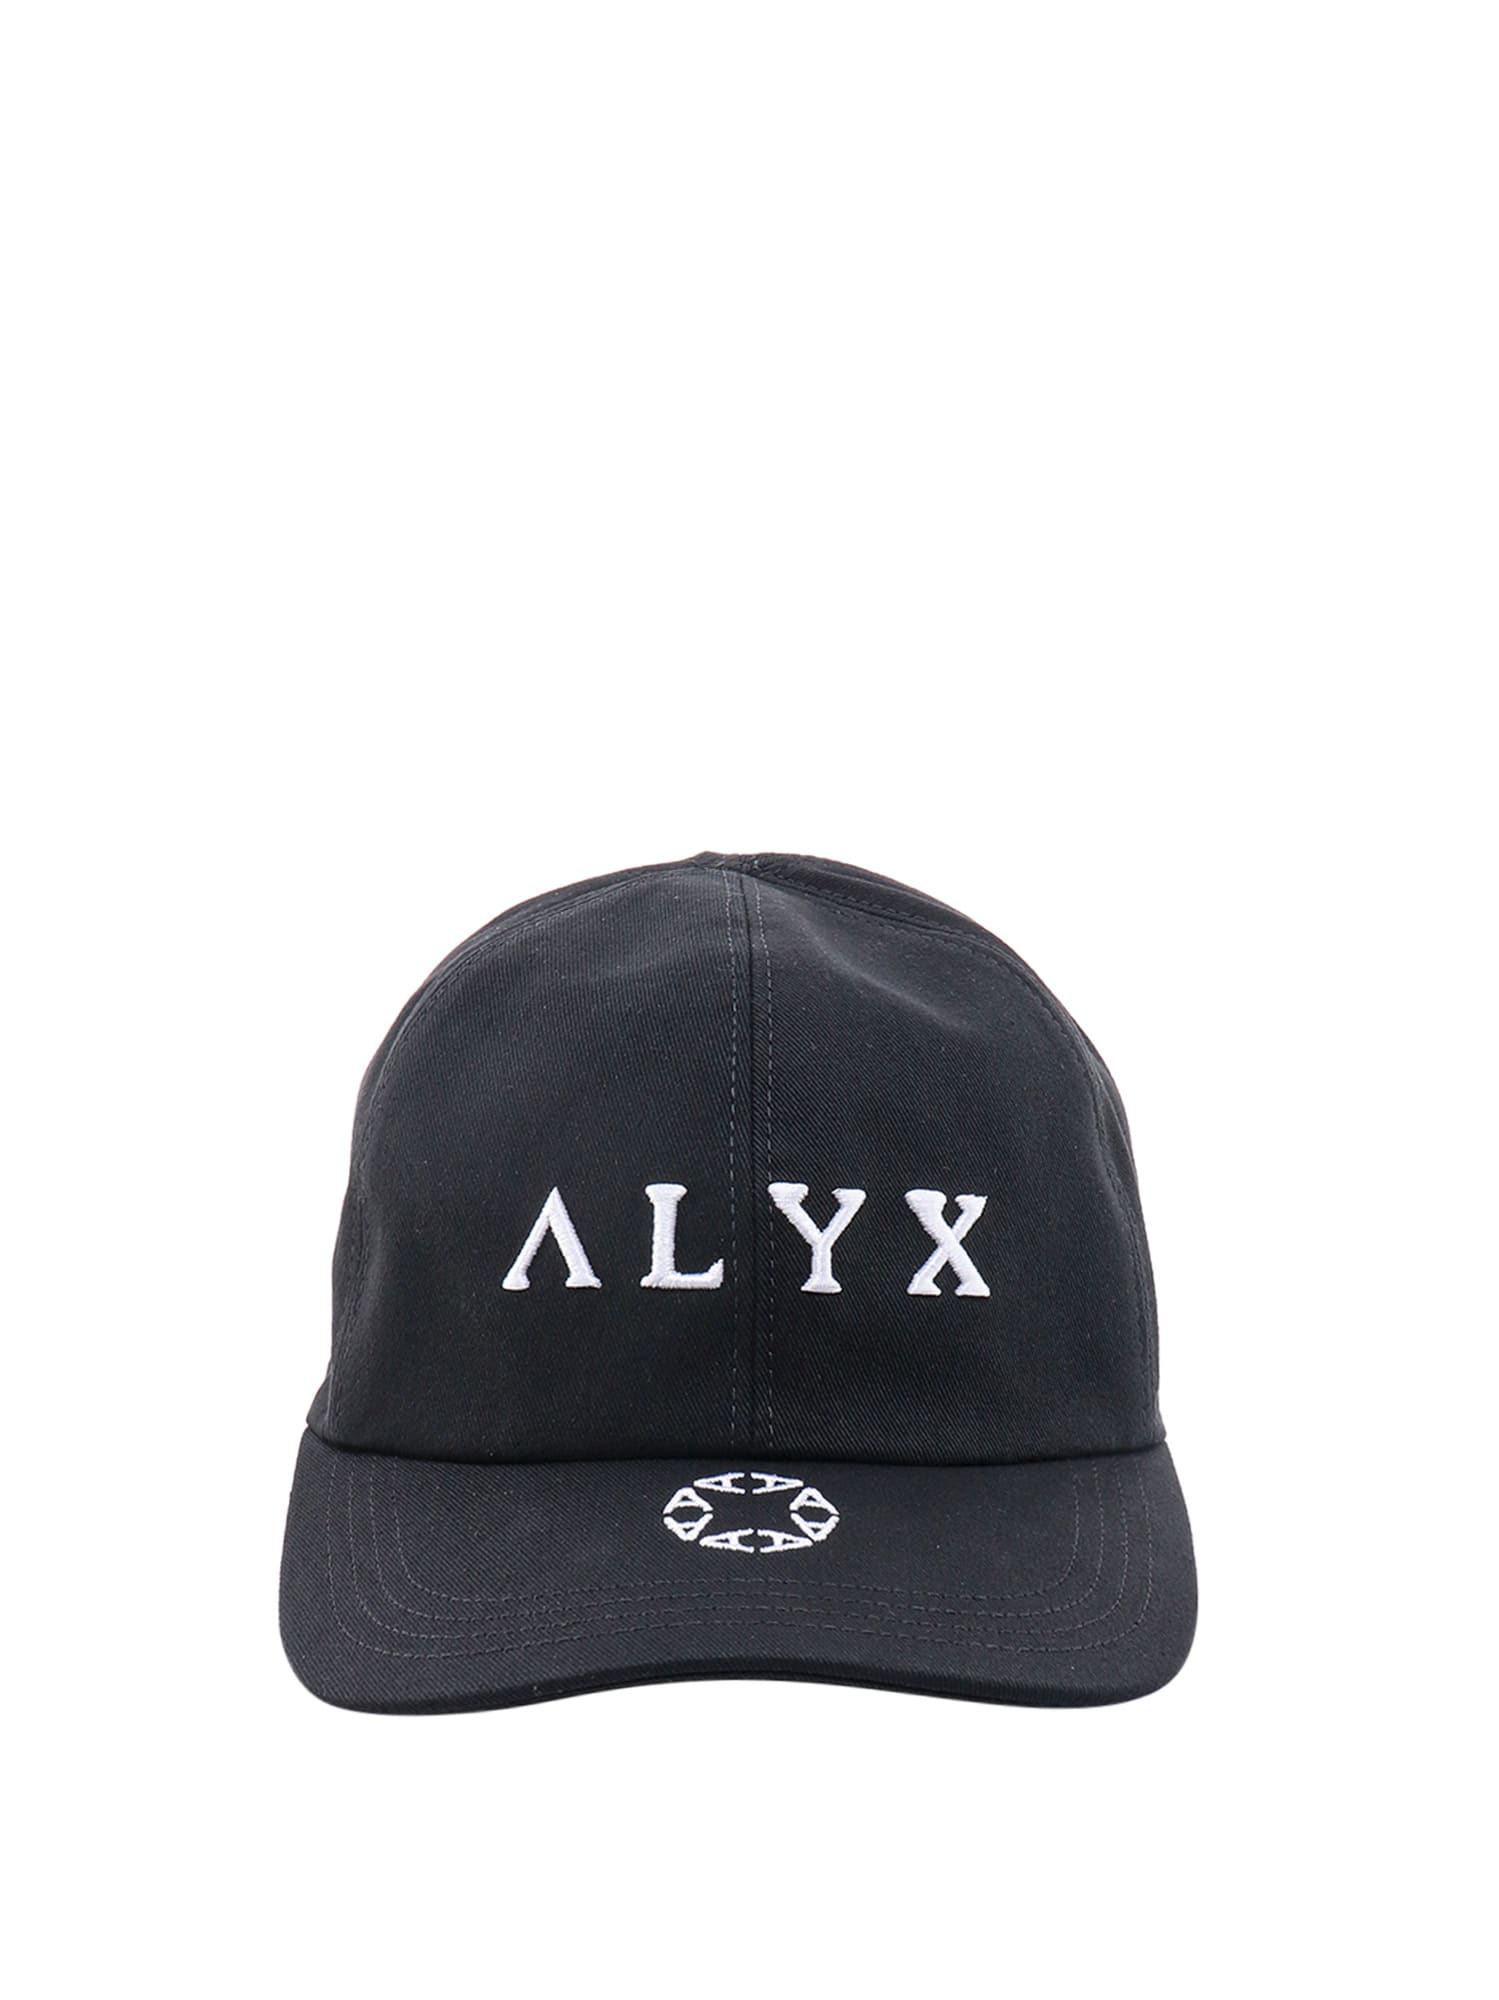 ALYX HAT